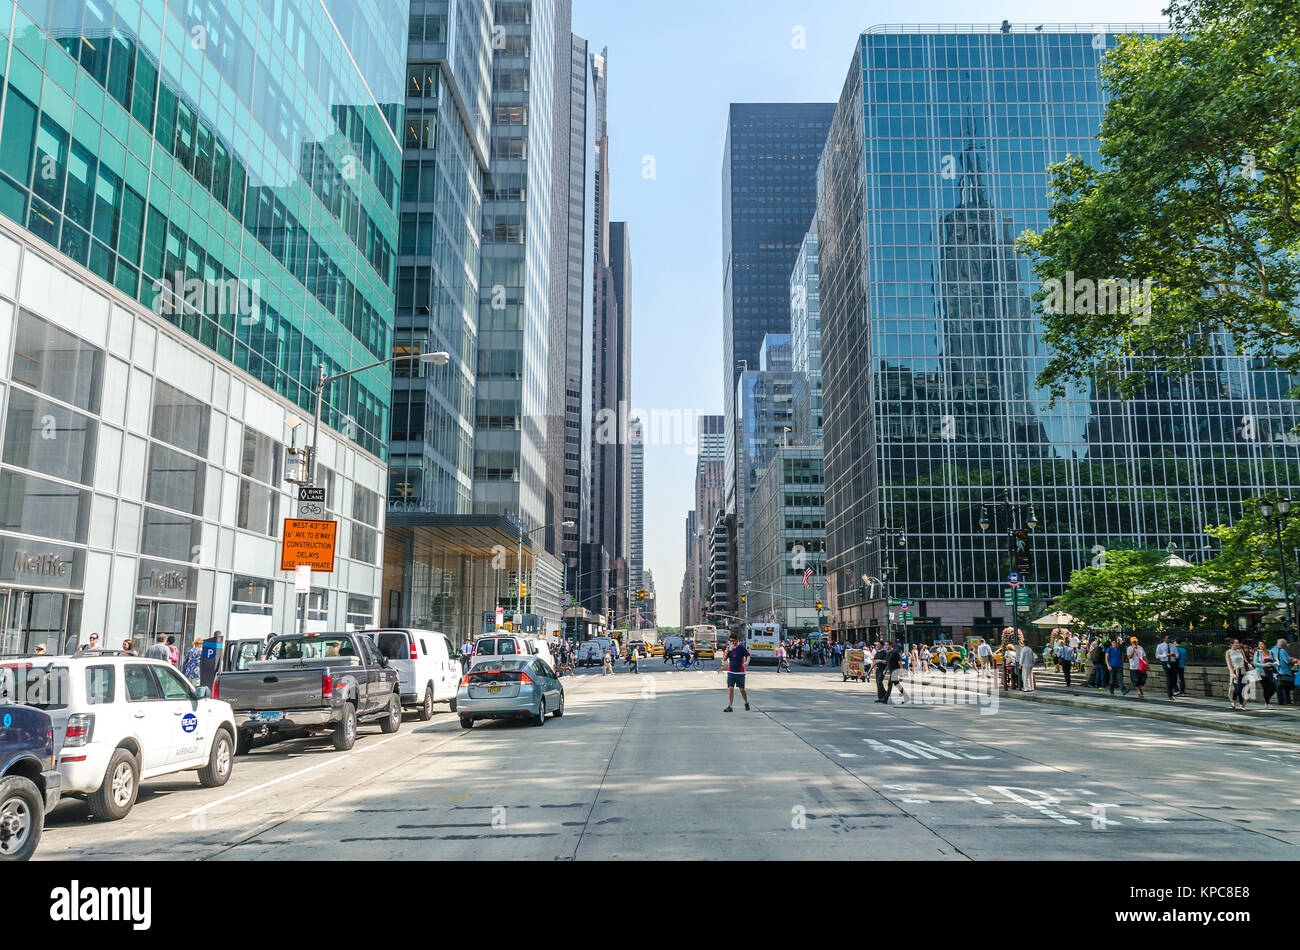 NEW YORK - JUL 22 : sixième avenue à la circulation et la publicité le 22 juillet 2014 à New York. 6ème avenue est une artère importante dans Manhattan, sur lequel t Banque D'Images